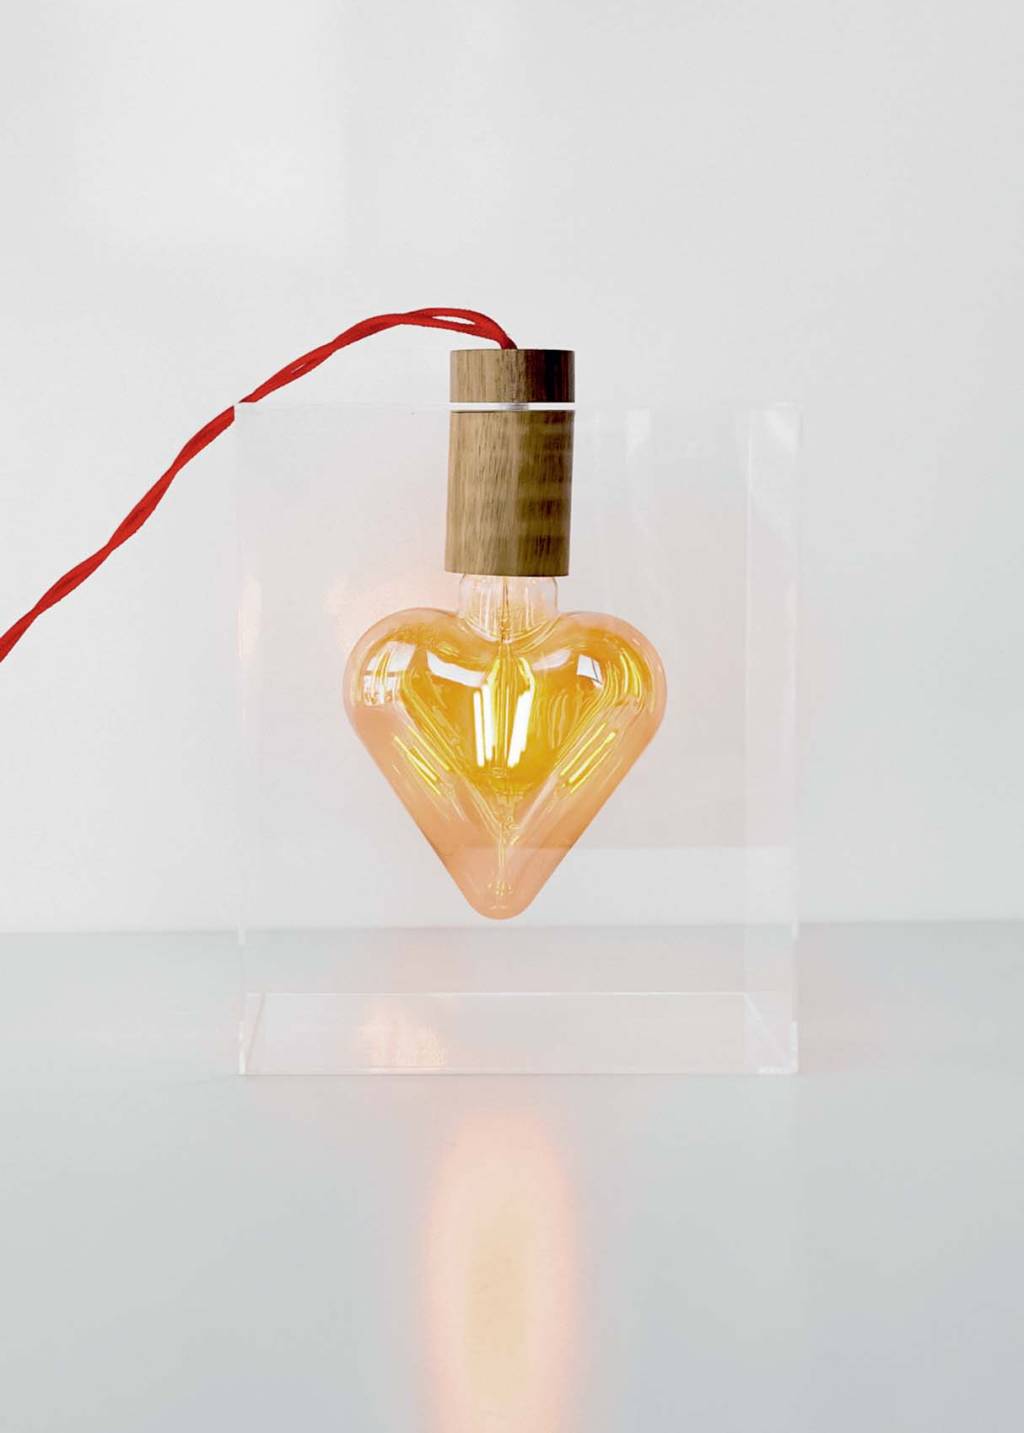 Luminária em formato de coração com bocal em madeira. O coração está posicionado dentro de um quadrado transparente, enquanto seu fio vermelho sai para fora